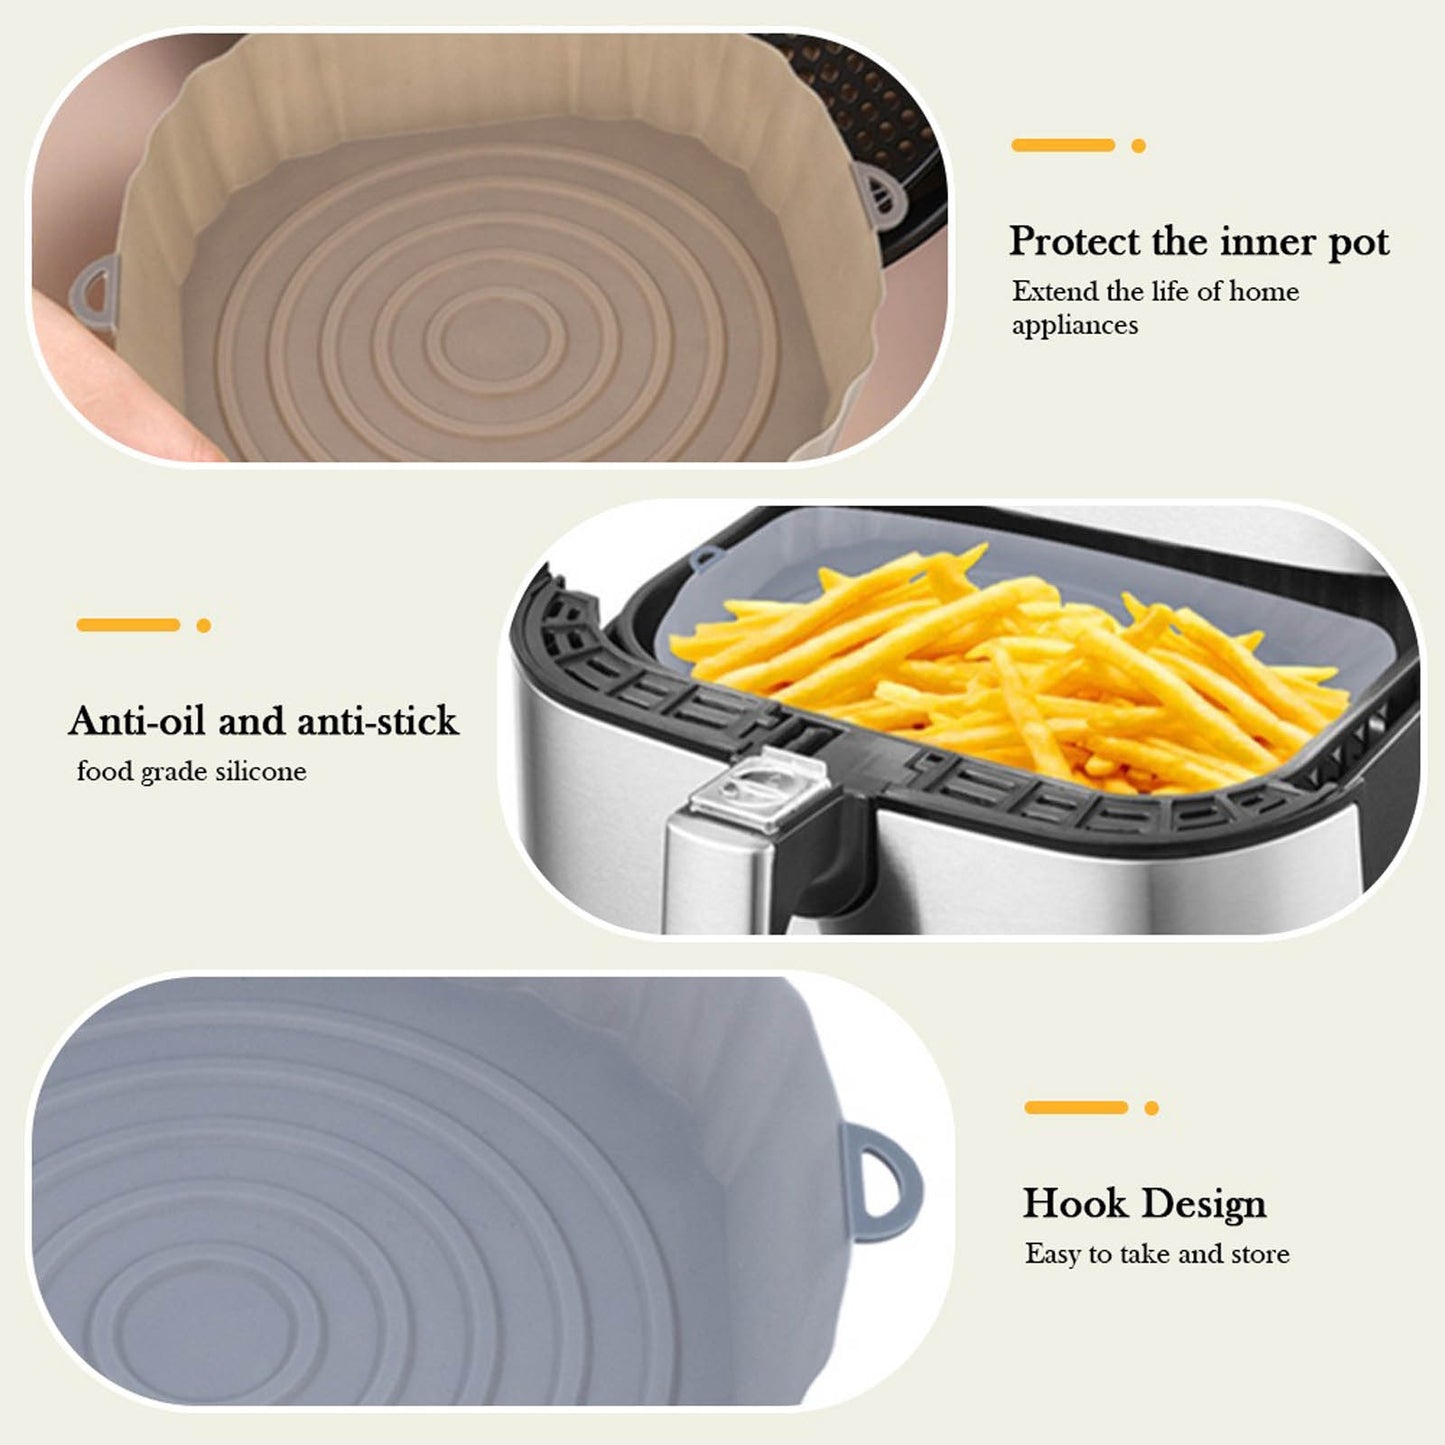 Cesta de Silicona para Air Fryer - Cocina Versátil y Fácil